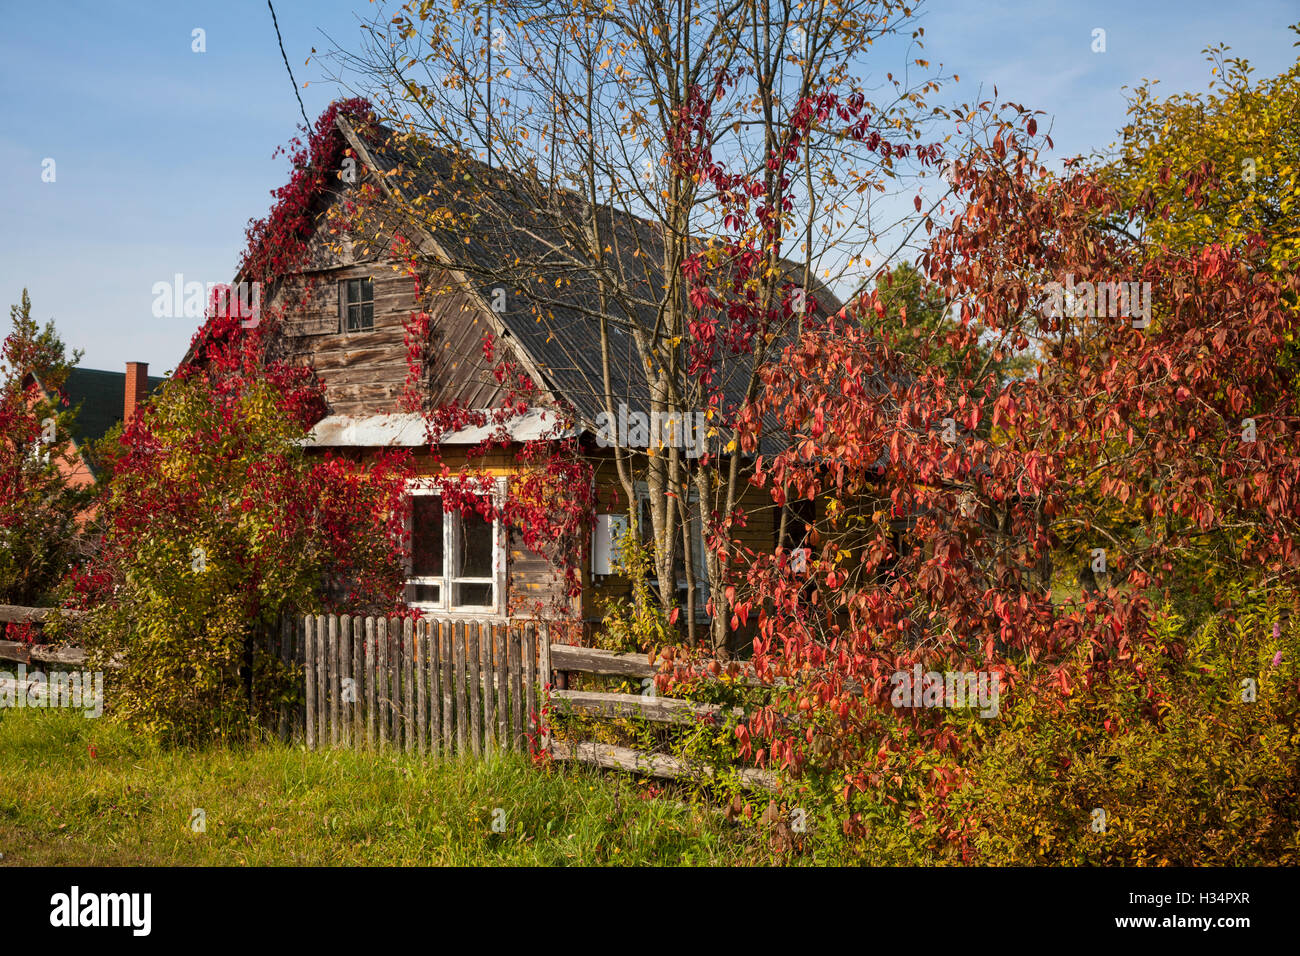 Autunno / autunno in Bialowieza. Architettura in Legno, Podlasie, Polonia, l'Europa. Foto Stock